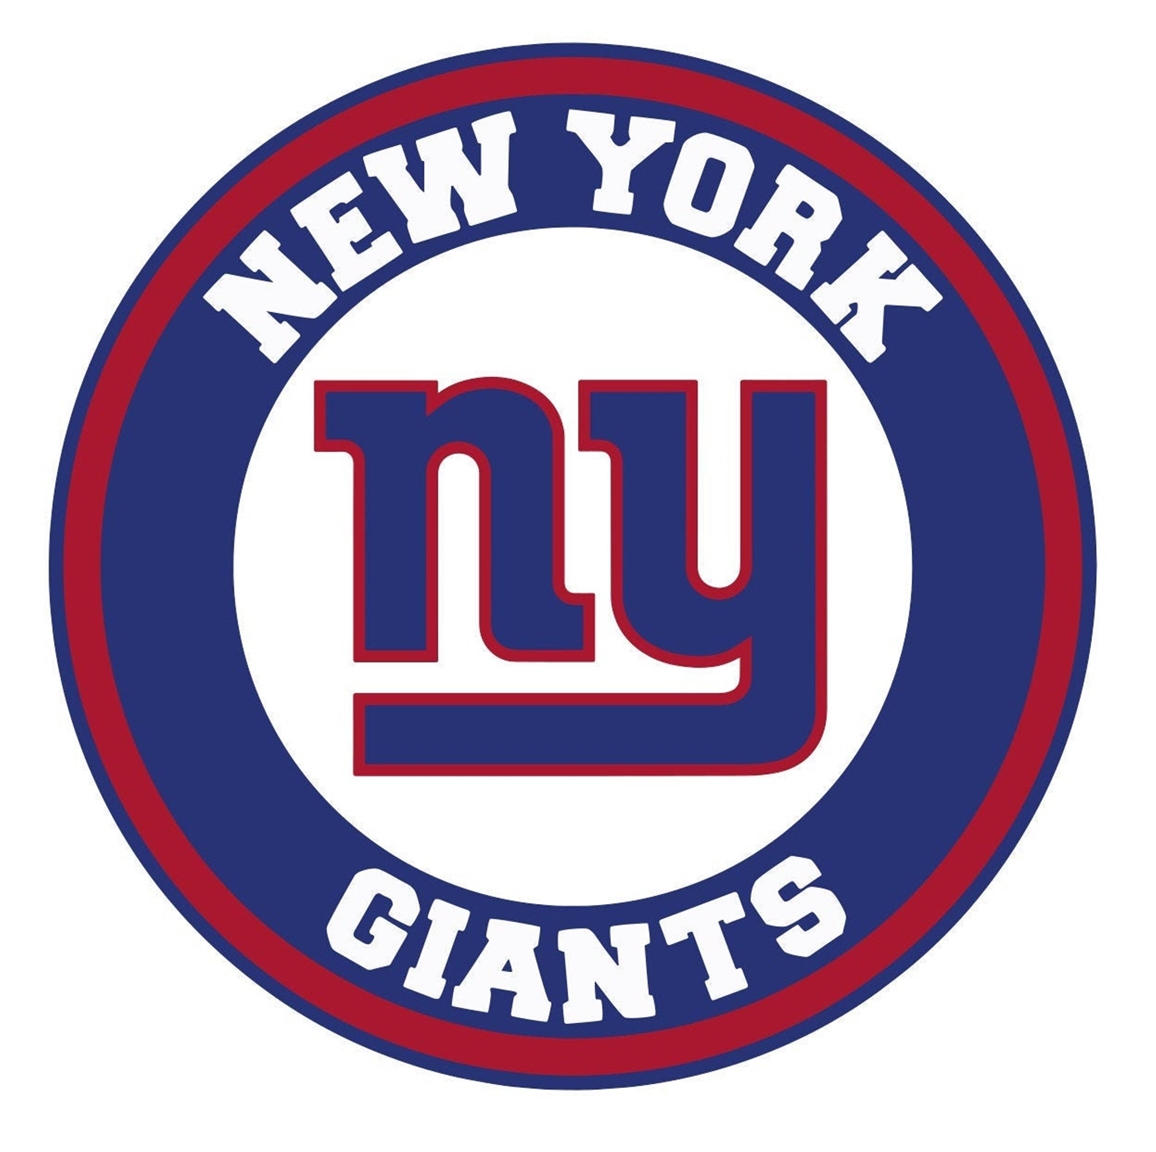 New York Giants Beer Tap